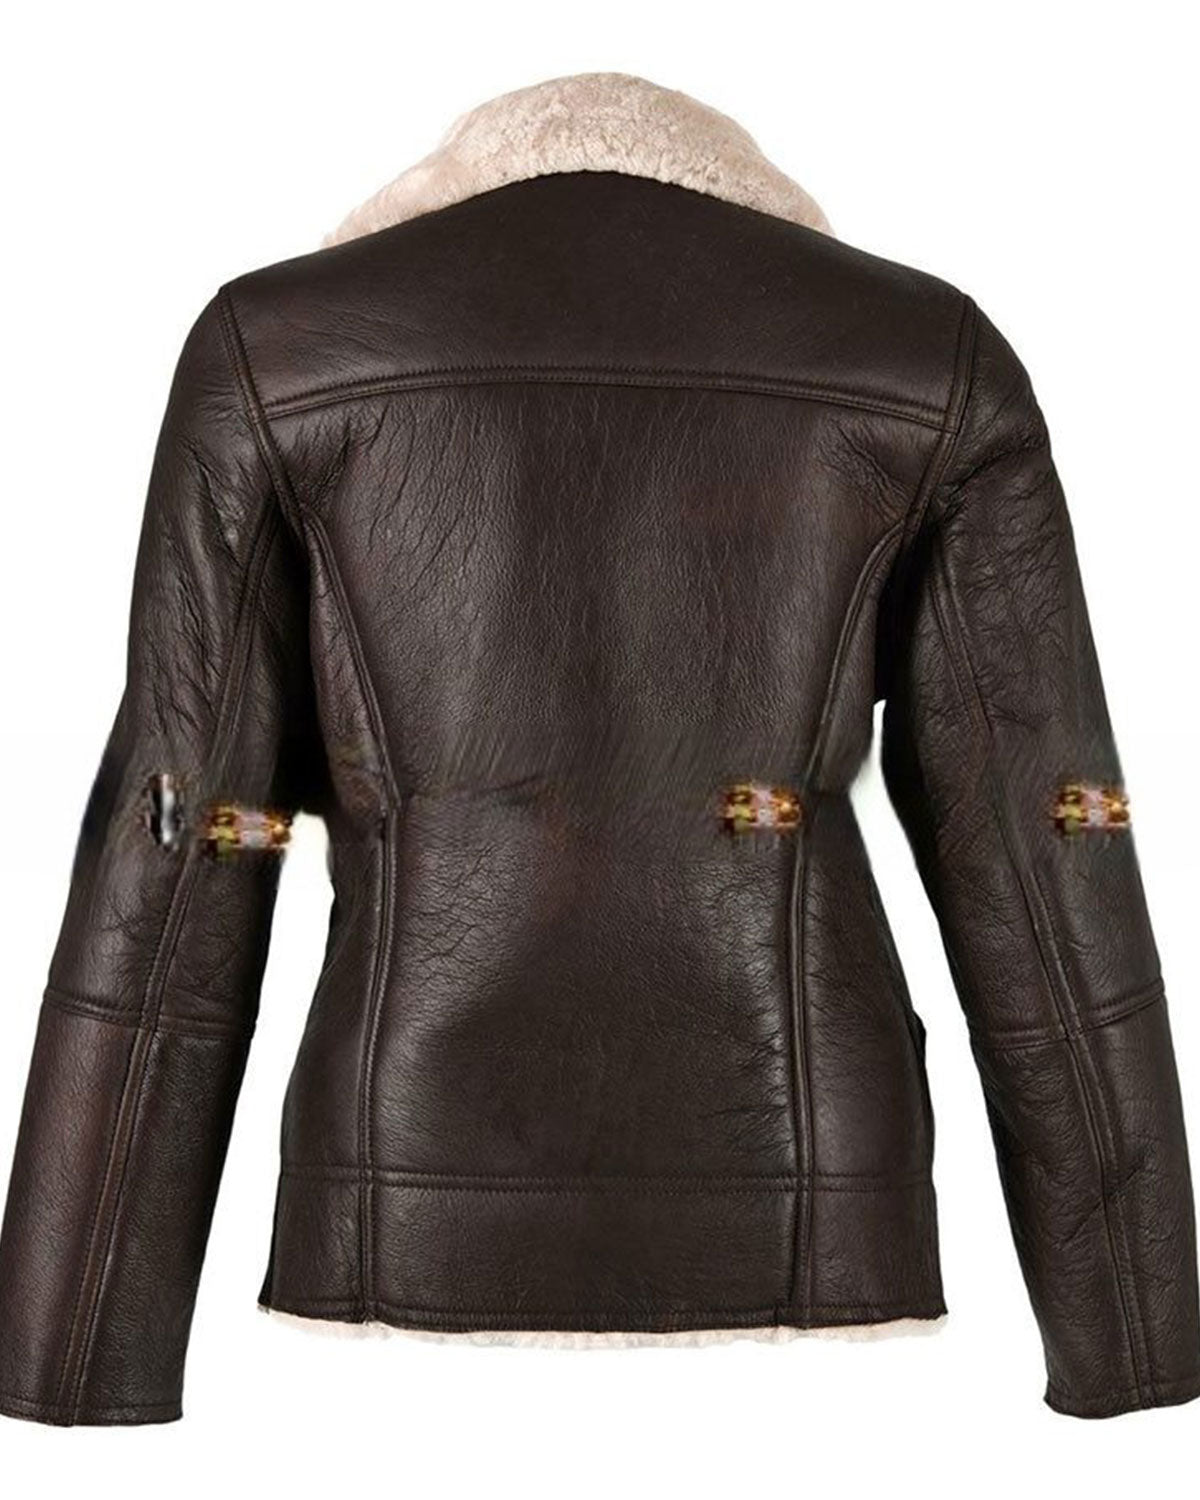 MotorCycleJackets Womens Sheepskin Brown Leather Shearling Jacket